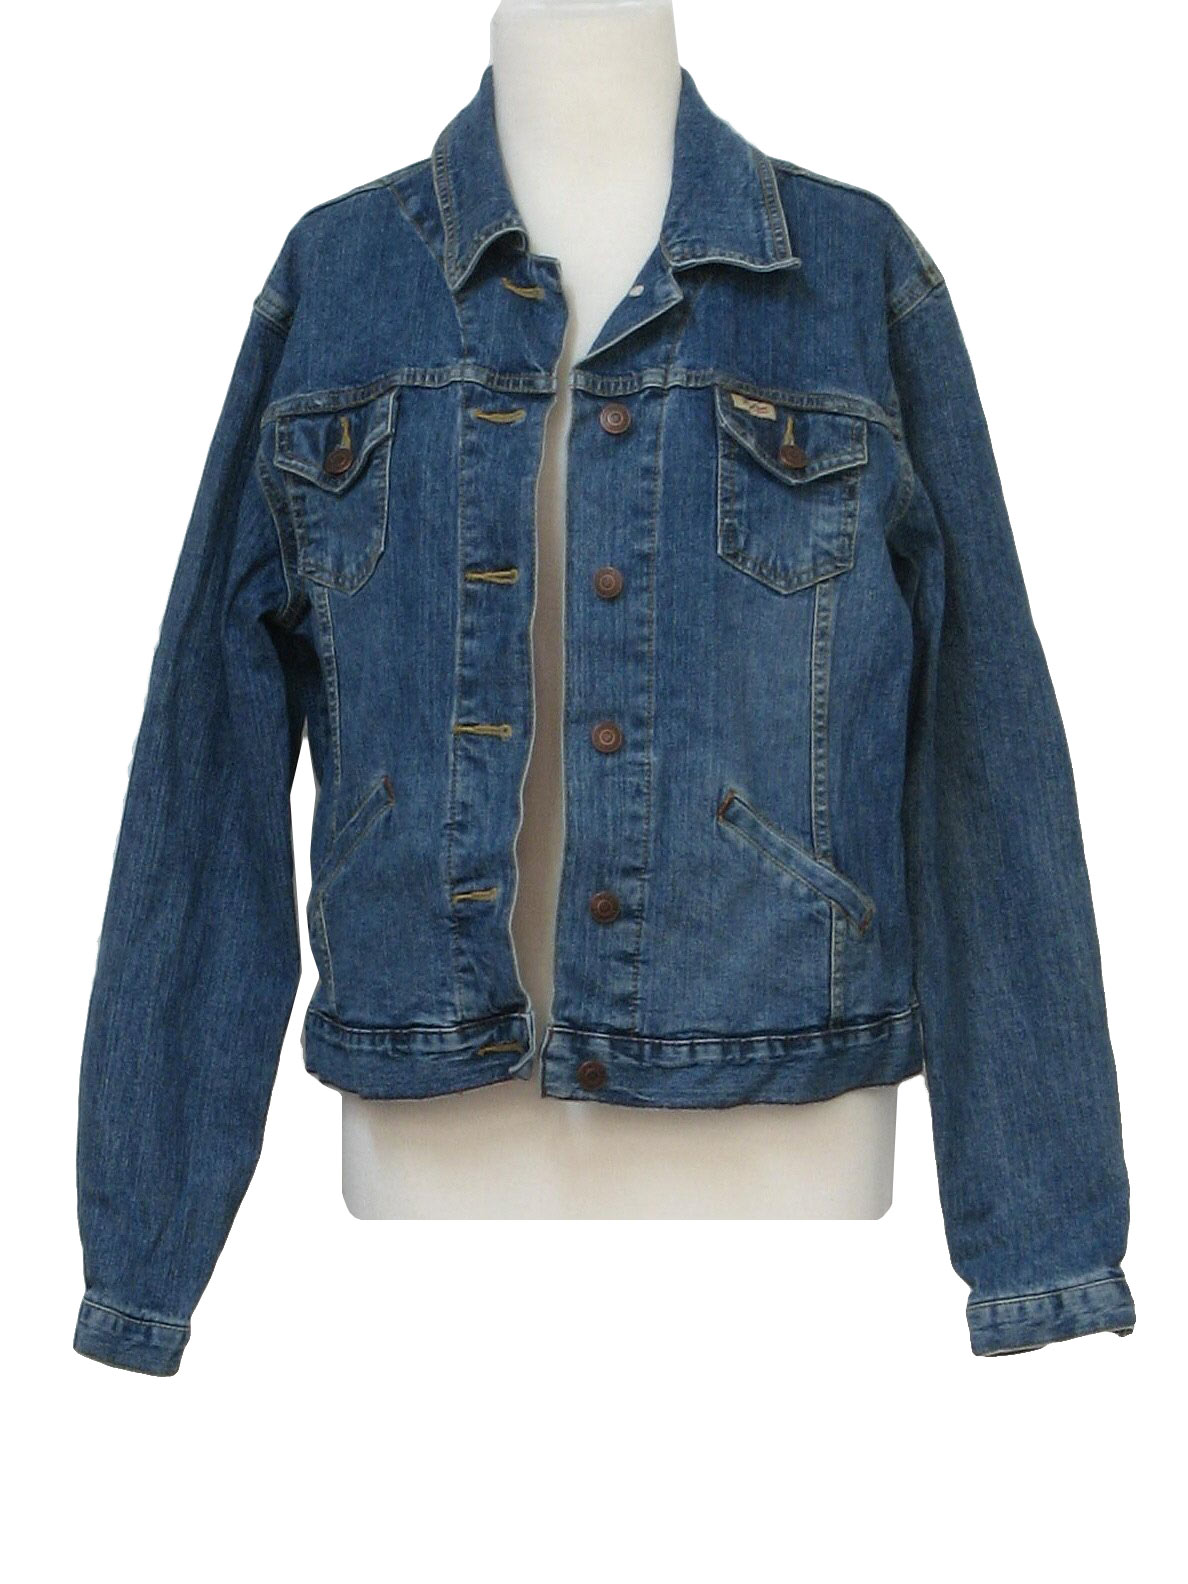 Retro Nineties Jacket: 90s -Levis- Womens cotton denim button front ...